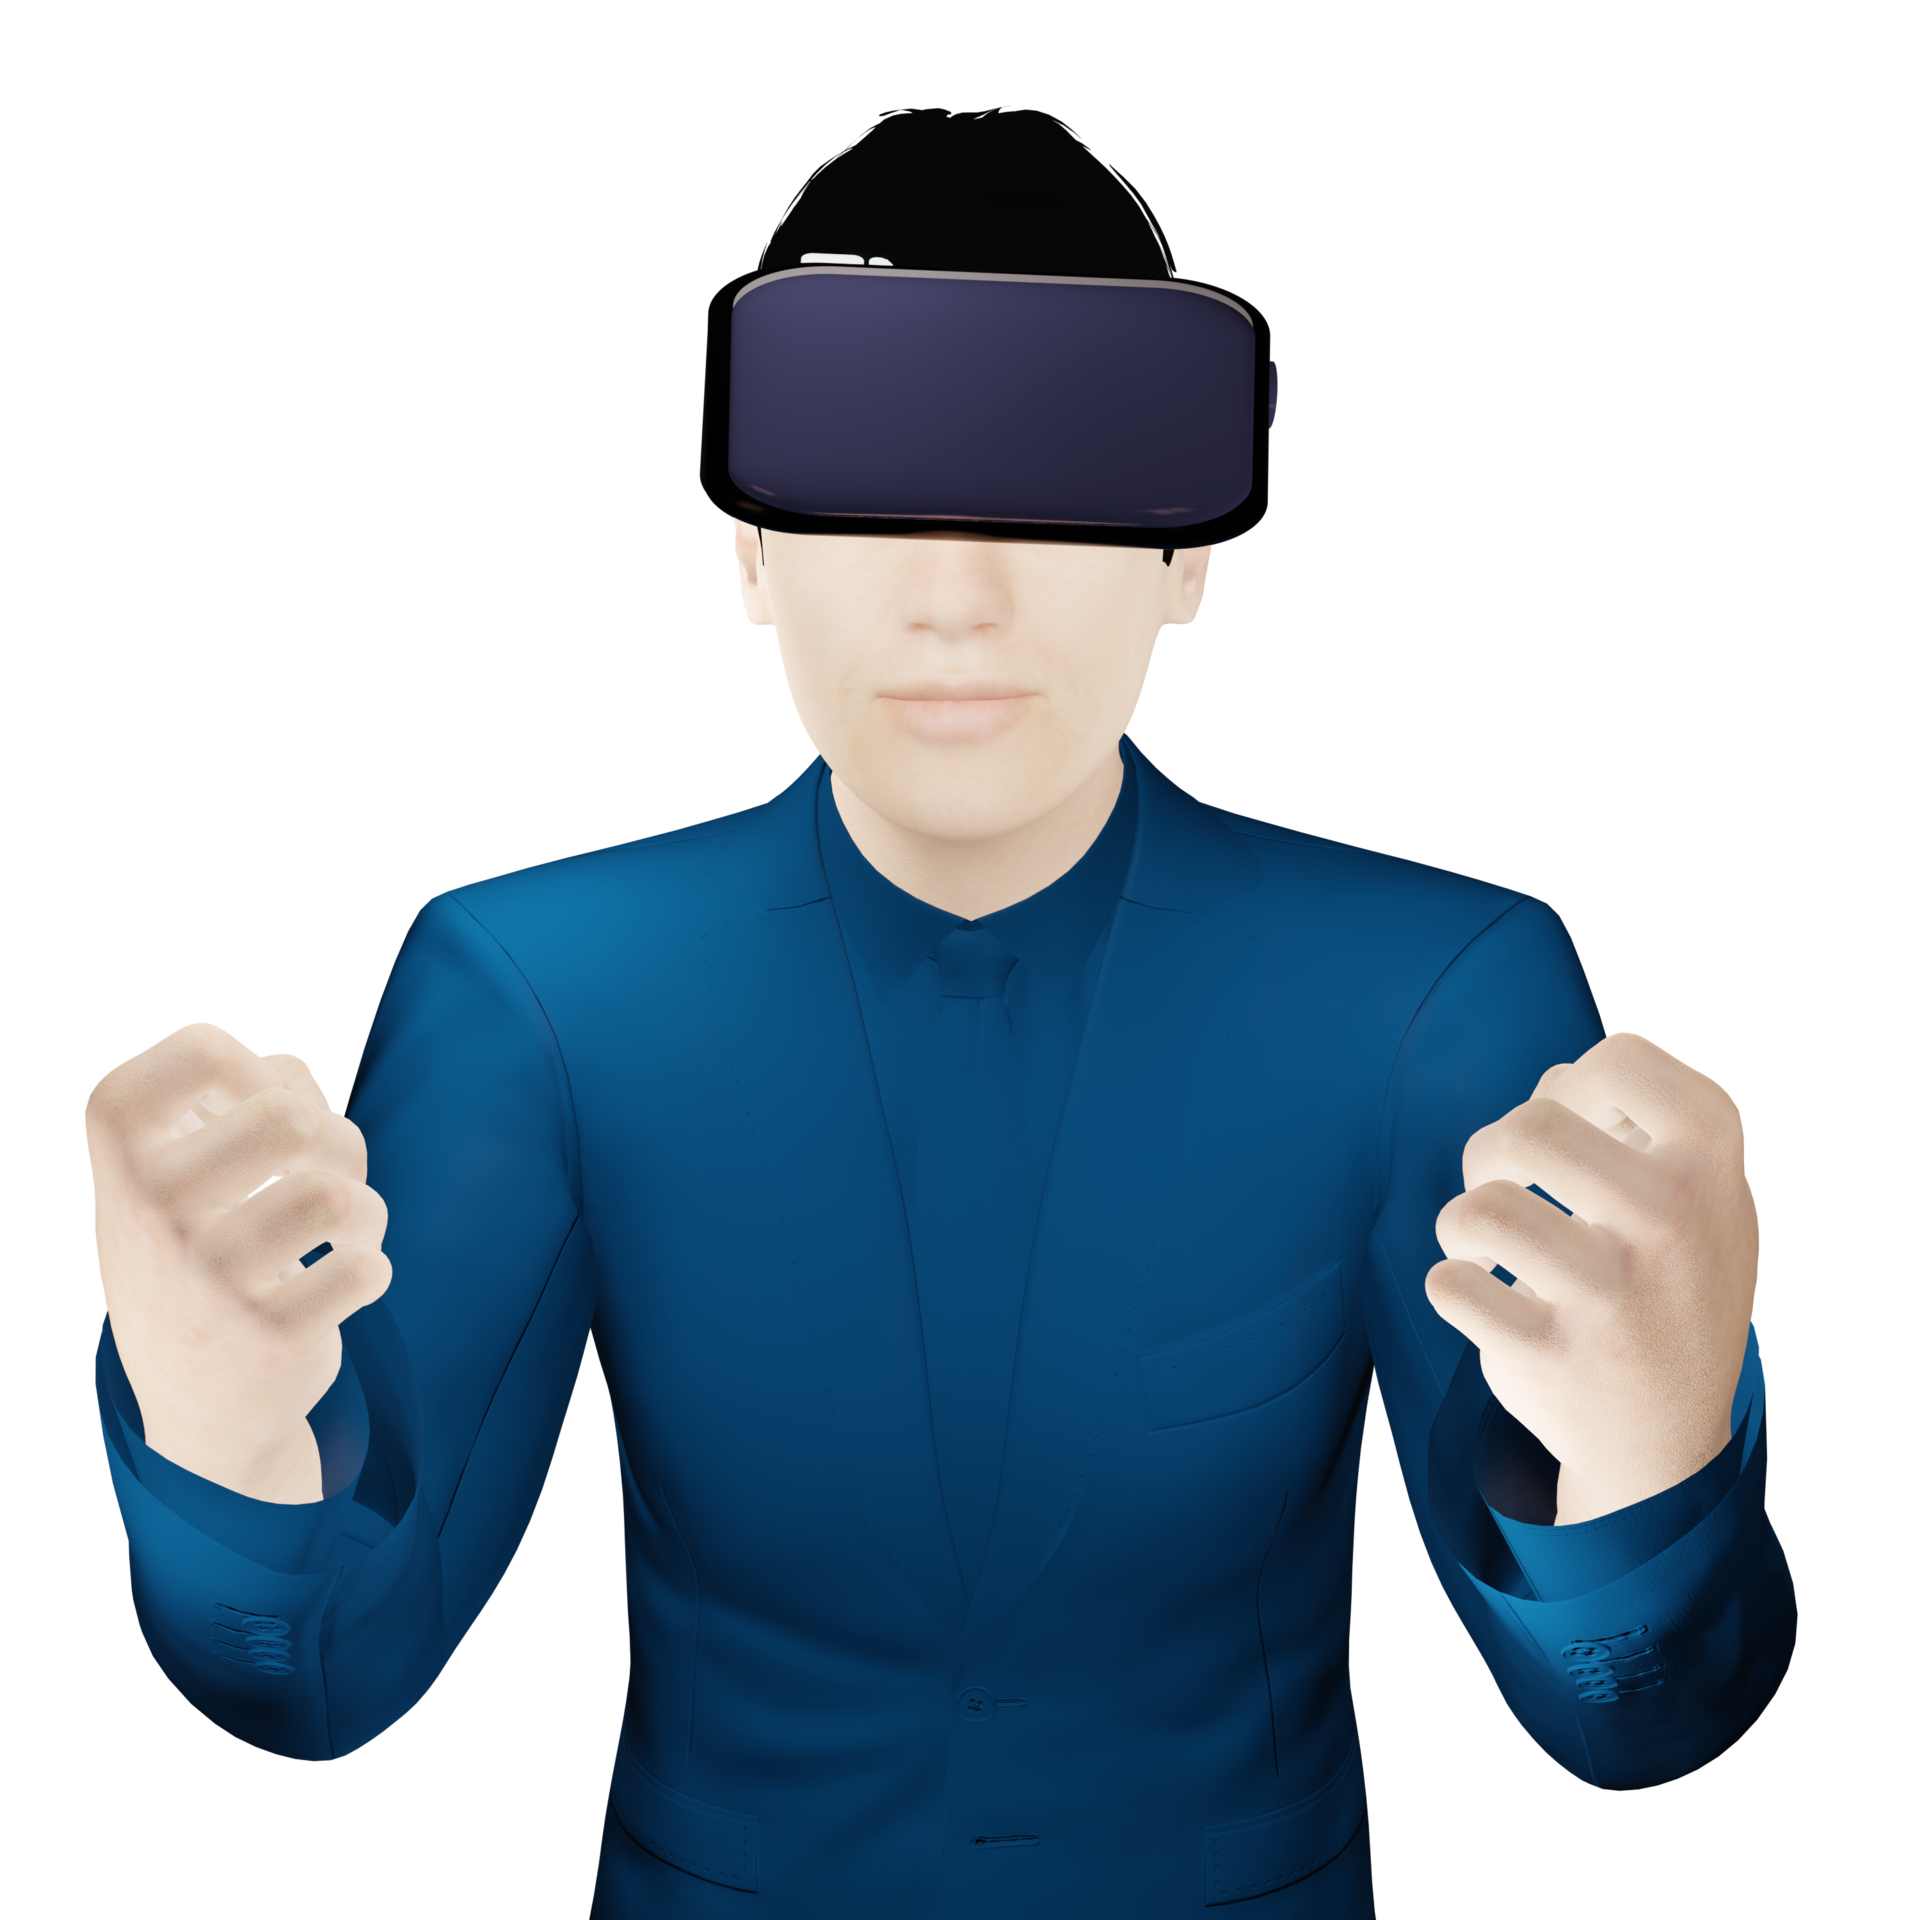 Holograma virtual de guarda-roupa com roupas jovem no fone de ouvido  digitalizando seu armário com metaverso com roupas de avatar menina jogando  jogo vr com realidade aumentada em casa ilustração vetorial